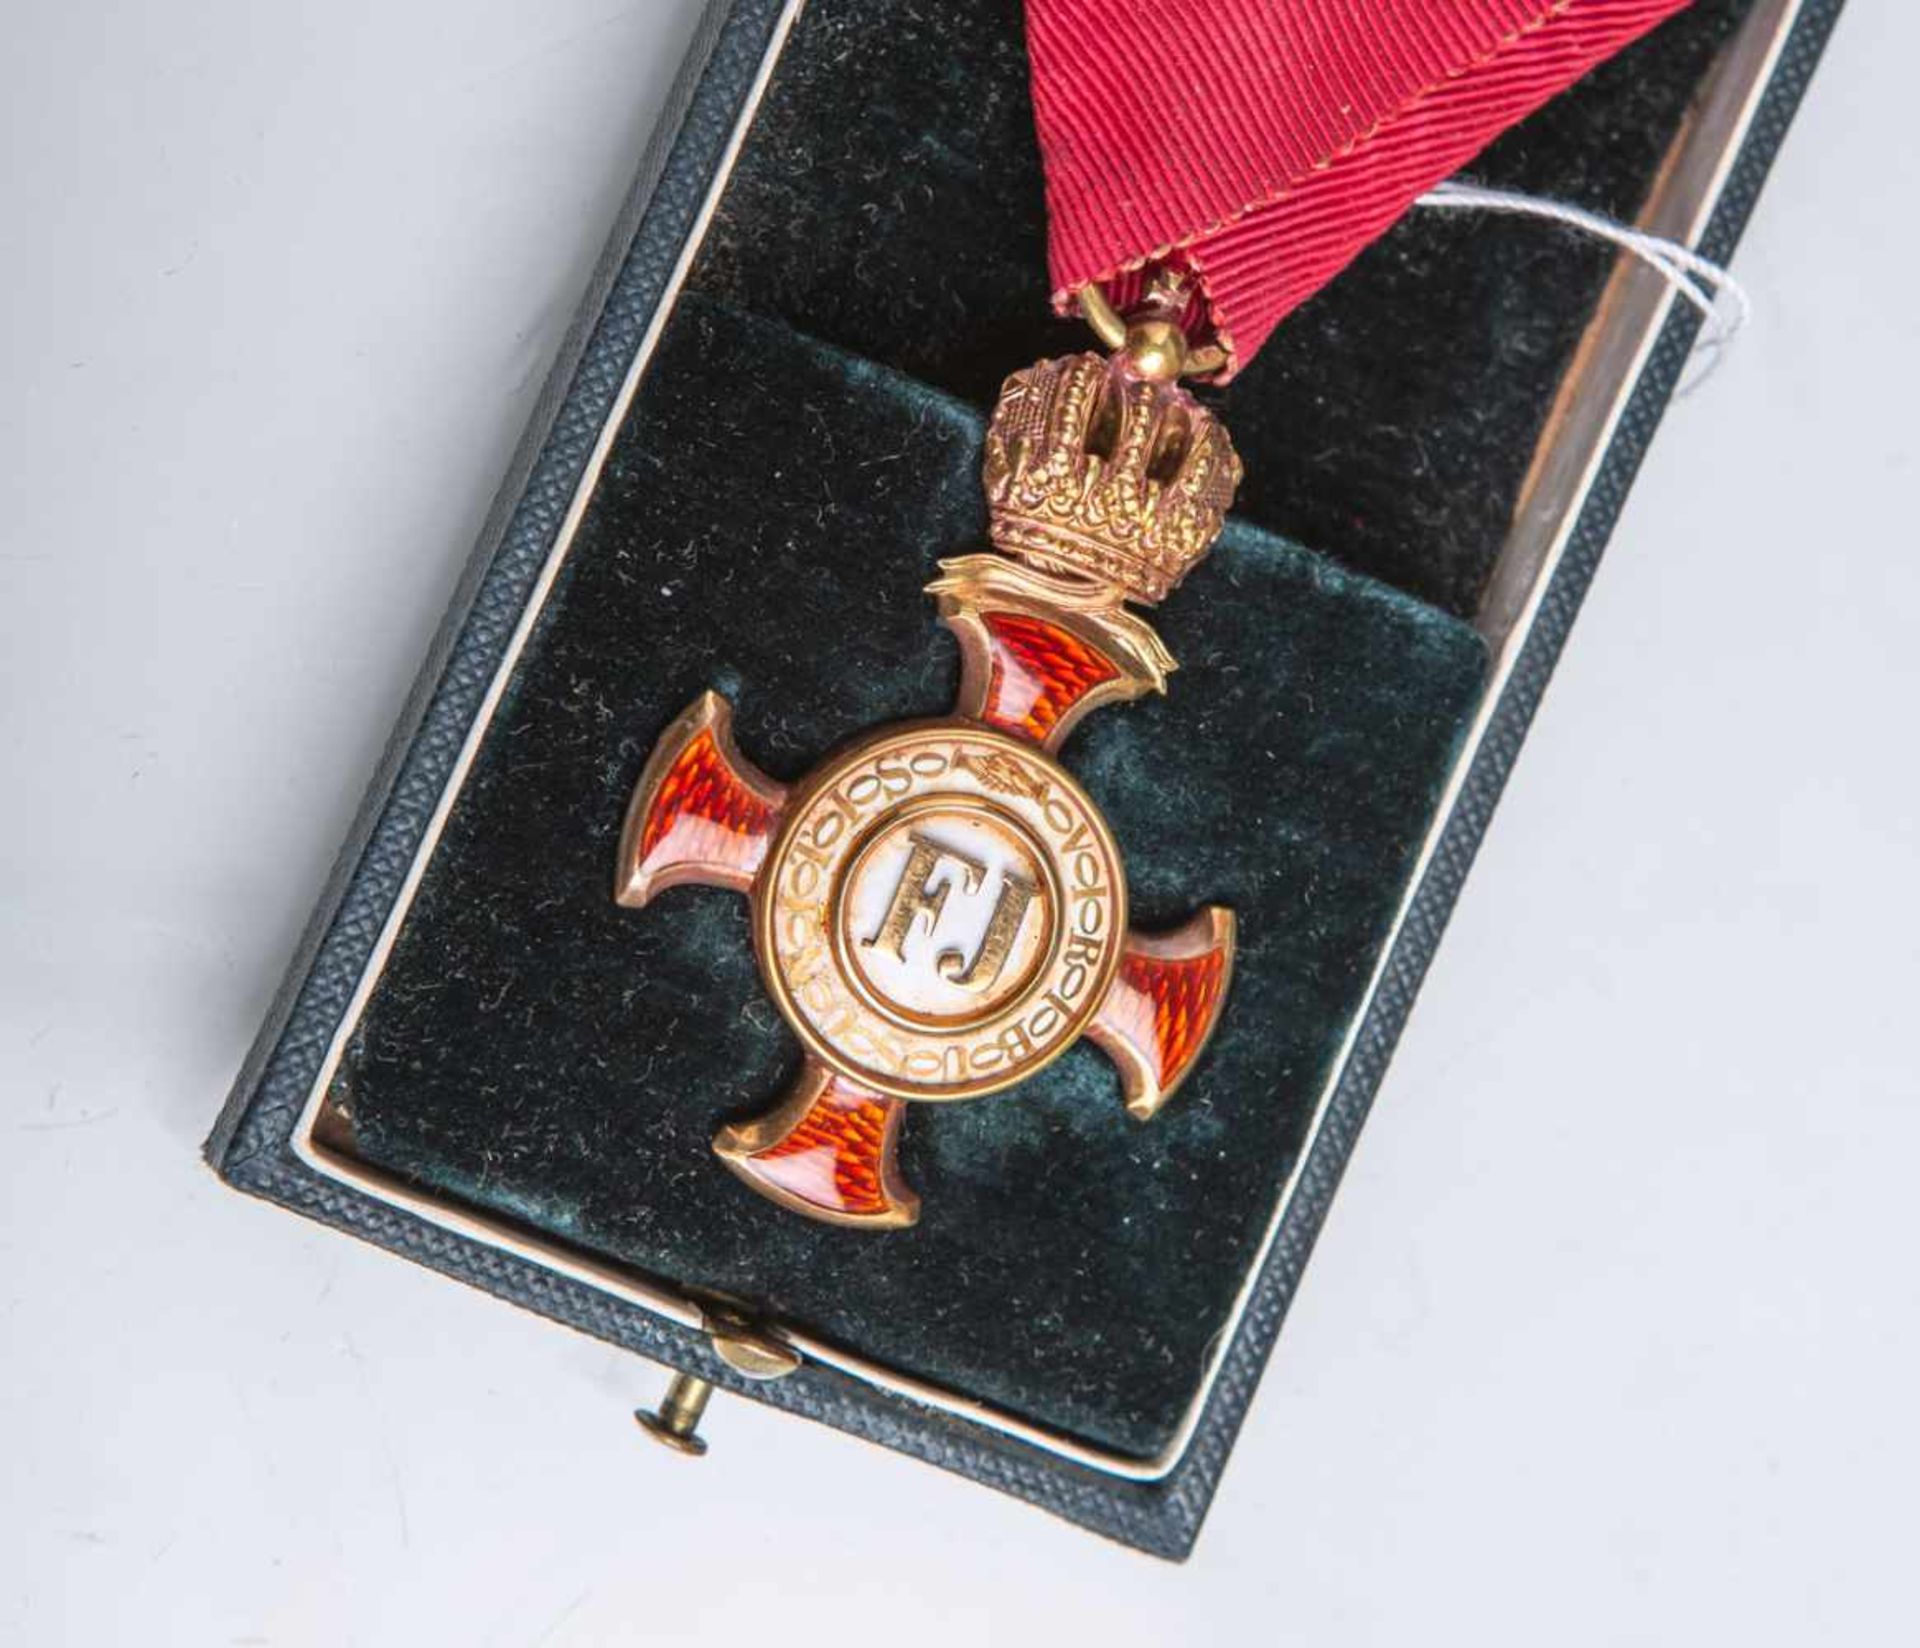 Österreichisches Verdienstkreuz mit Krone am roten Dreiecksband, Ringöse bez. "W. Mayer u. Sohn in